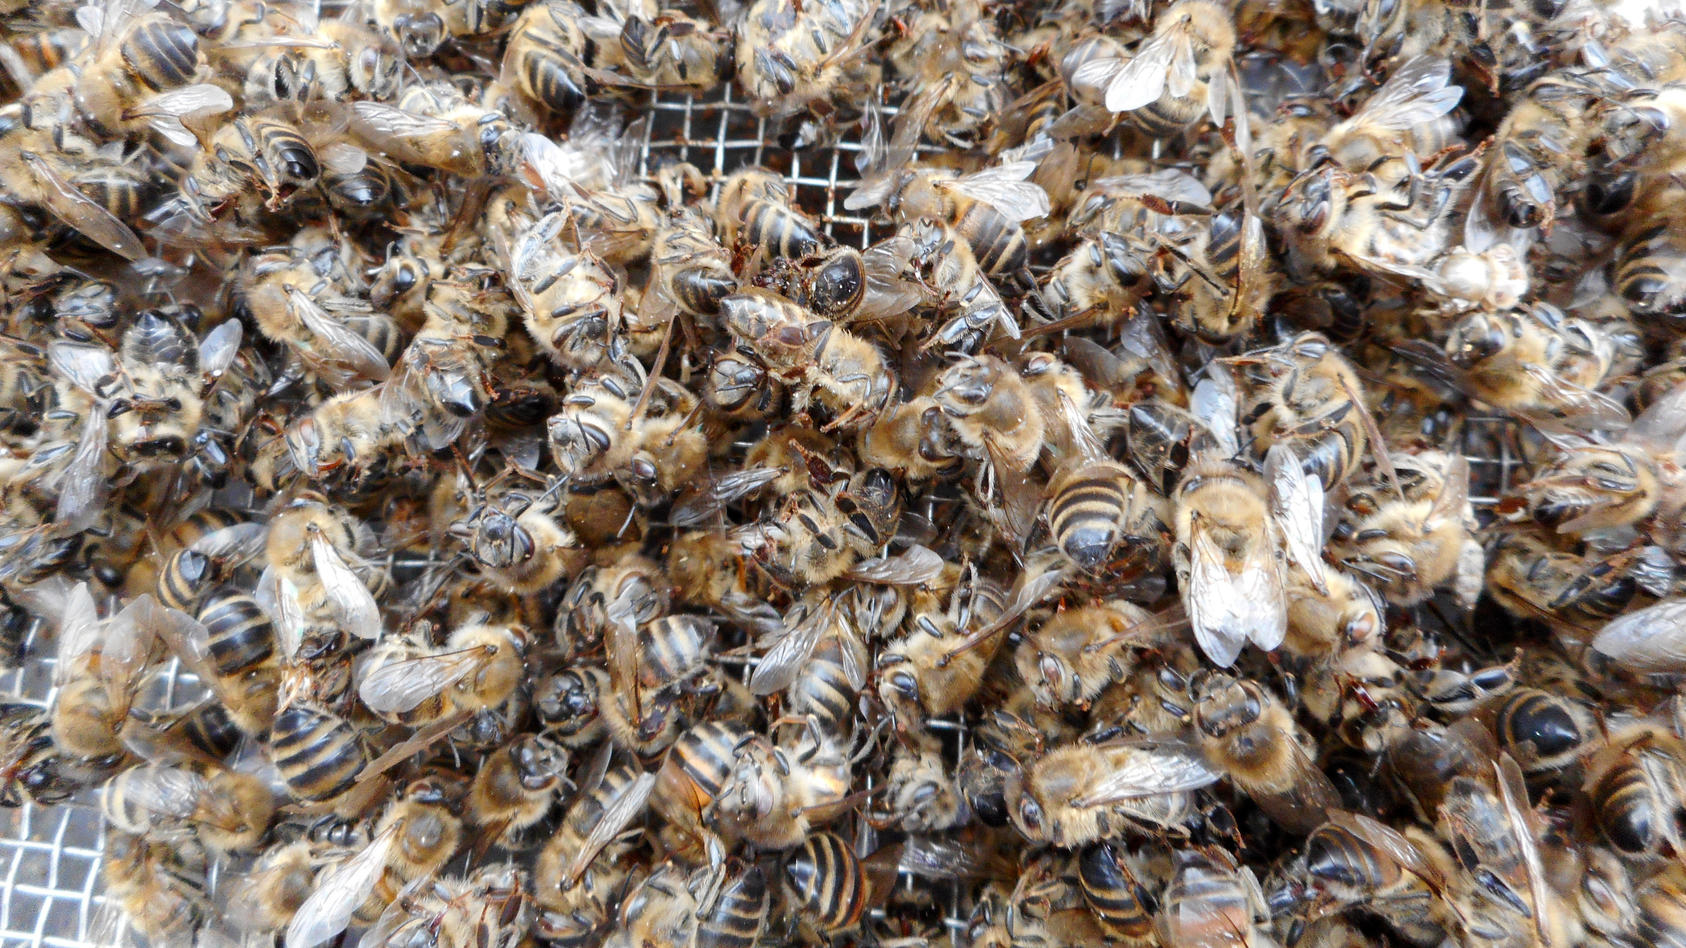 2021 war auch für die Bienen in Deutschland ein schreckliches Jahr. Parasiten, Fungizide, Monokulturen und der Klimawandel verursachten das Sterben vieler Honigbienen in Deutschland.